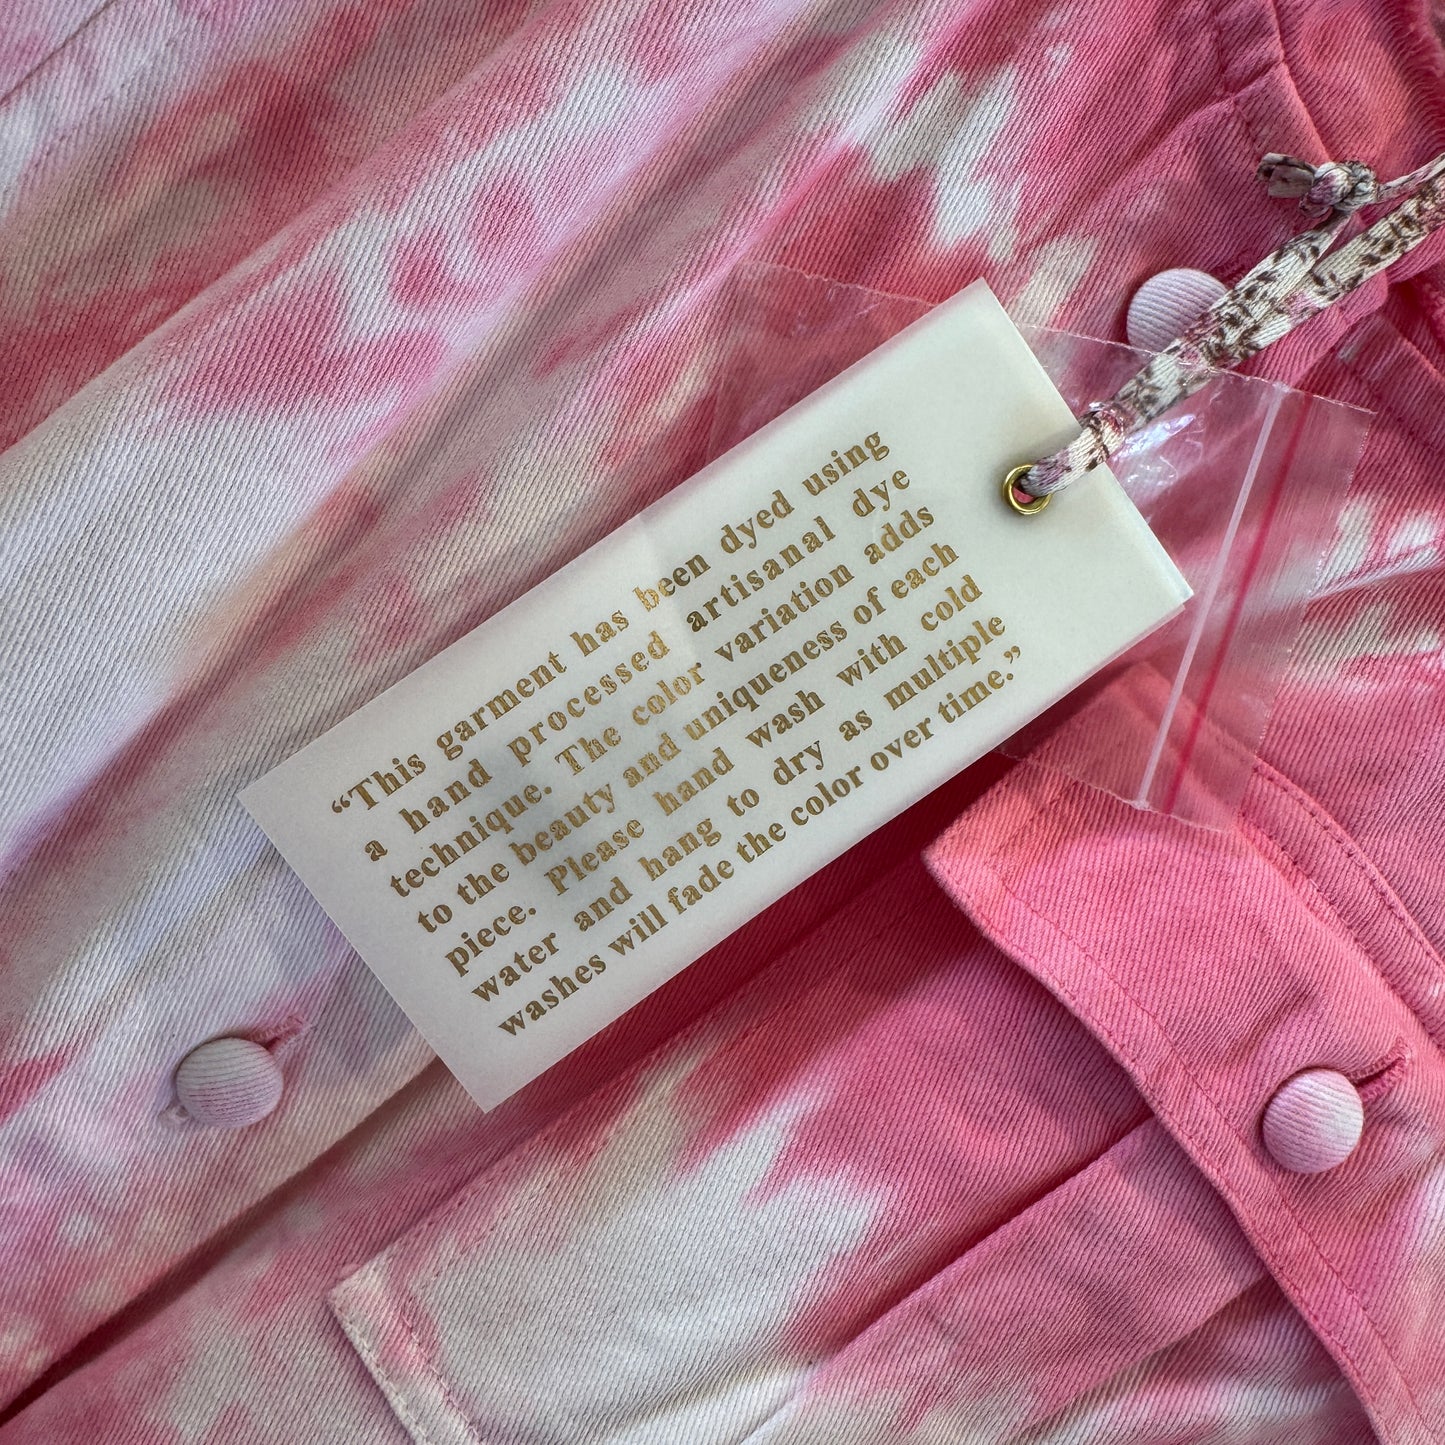 LoveShackFancy Paca Jumpsuit in Hibiscus Hand Dyed Pink white Tie-dye